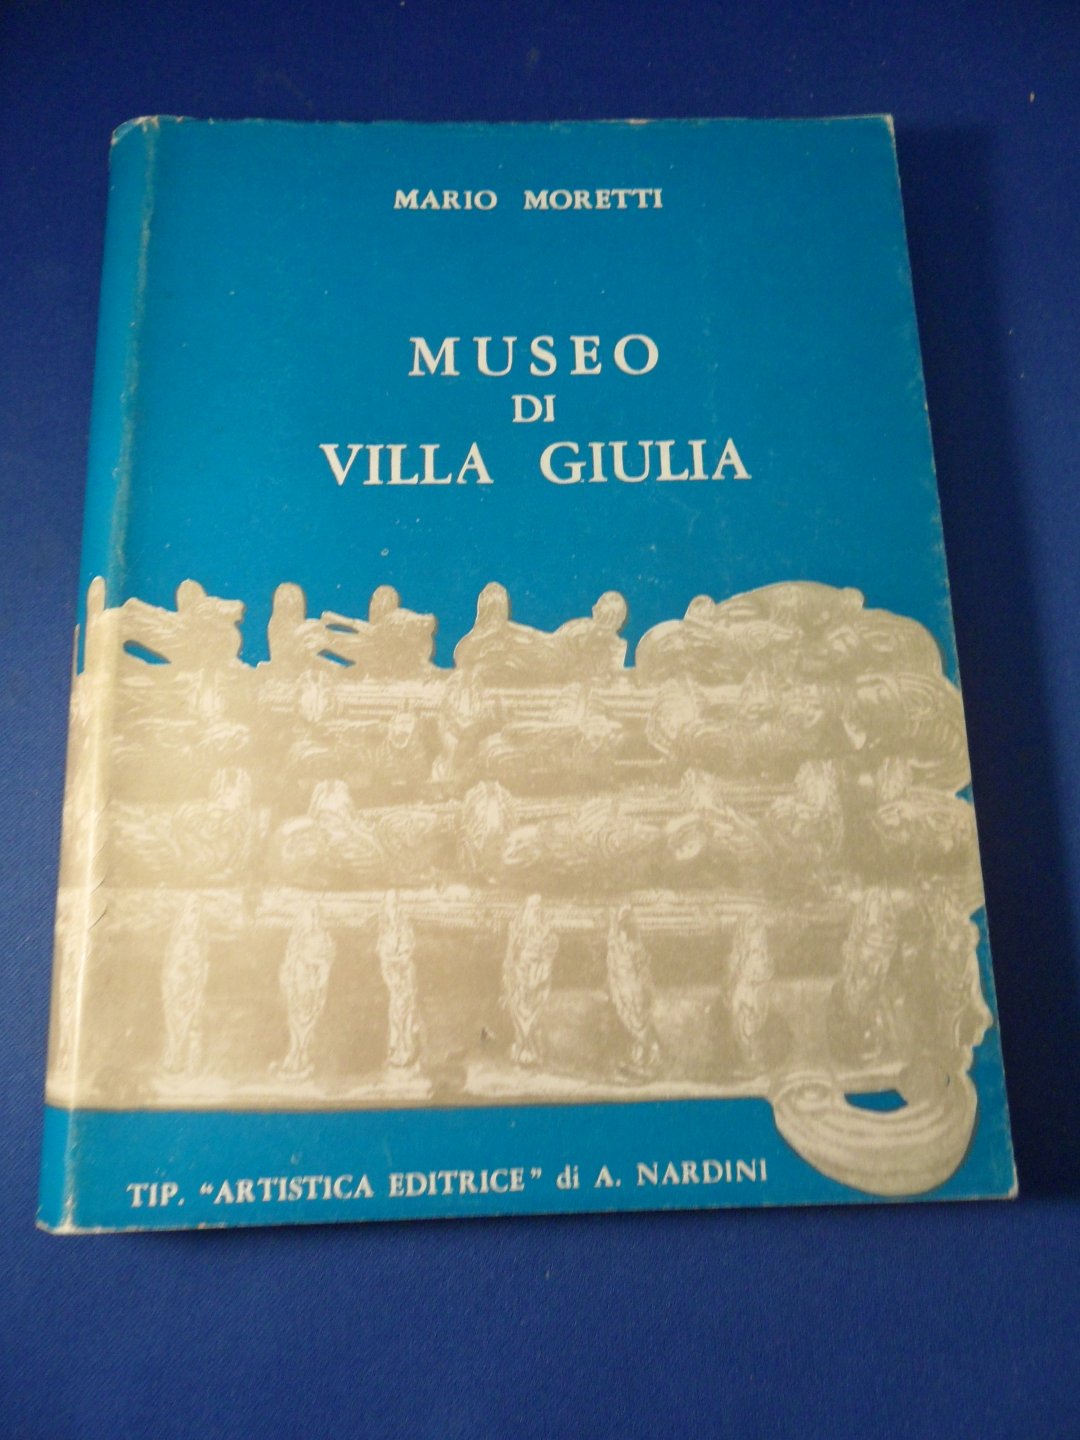 Moretti, Mario - Museo di Villa Giulia. The National Museum of Villa Giulia